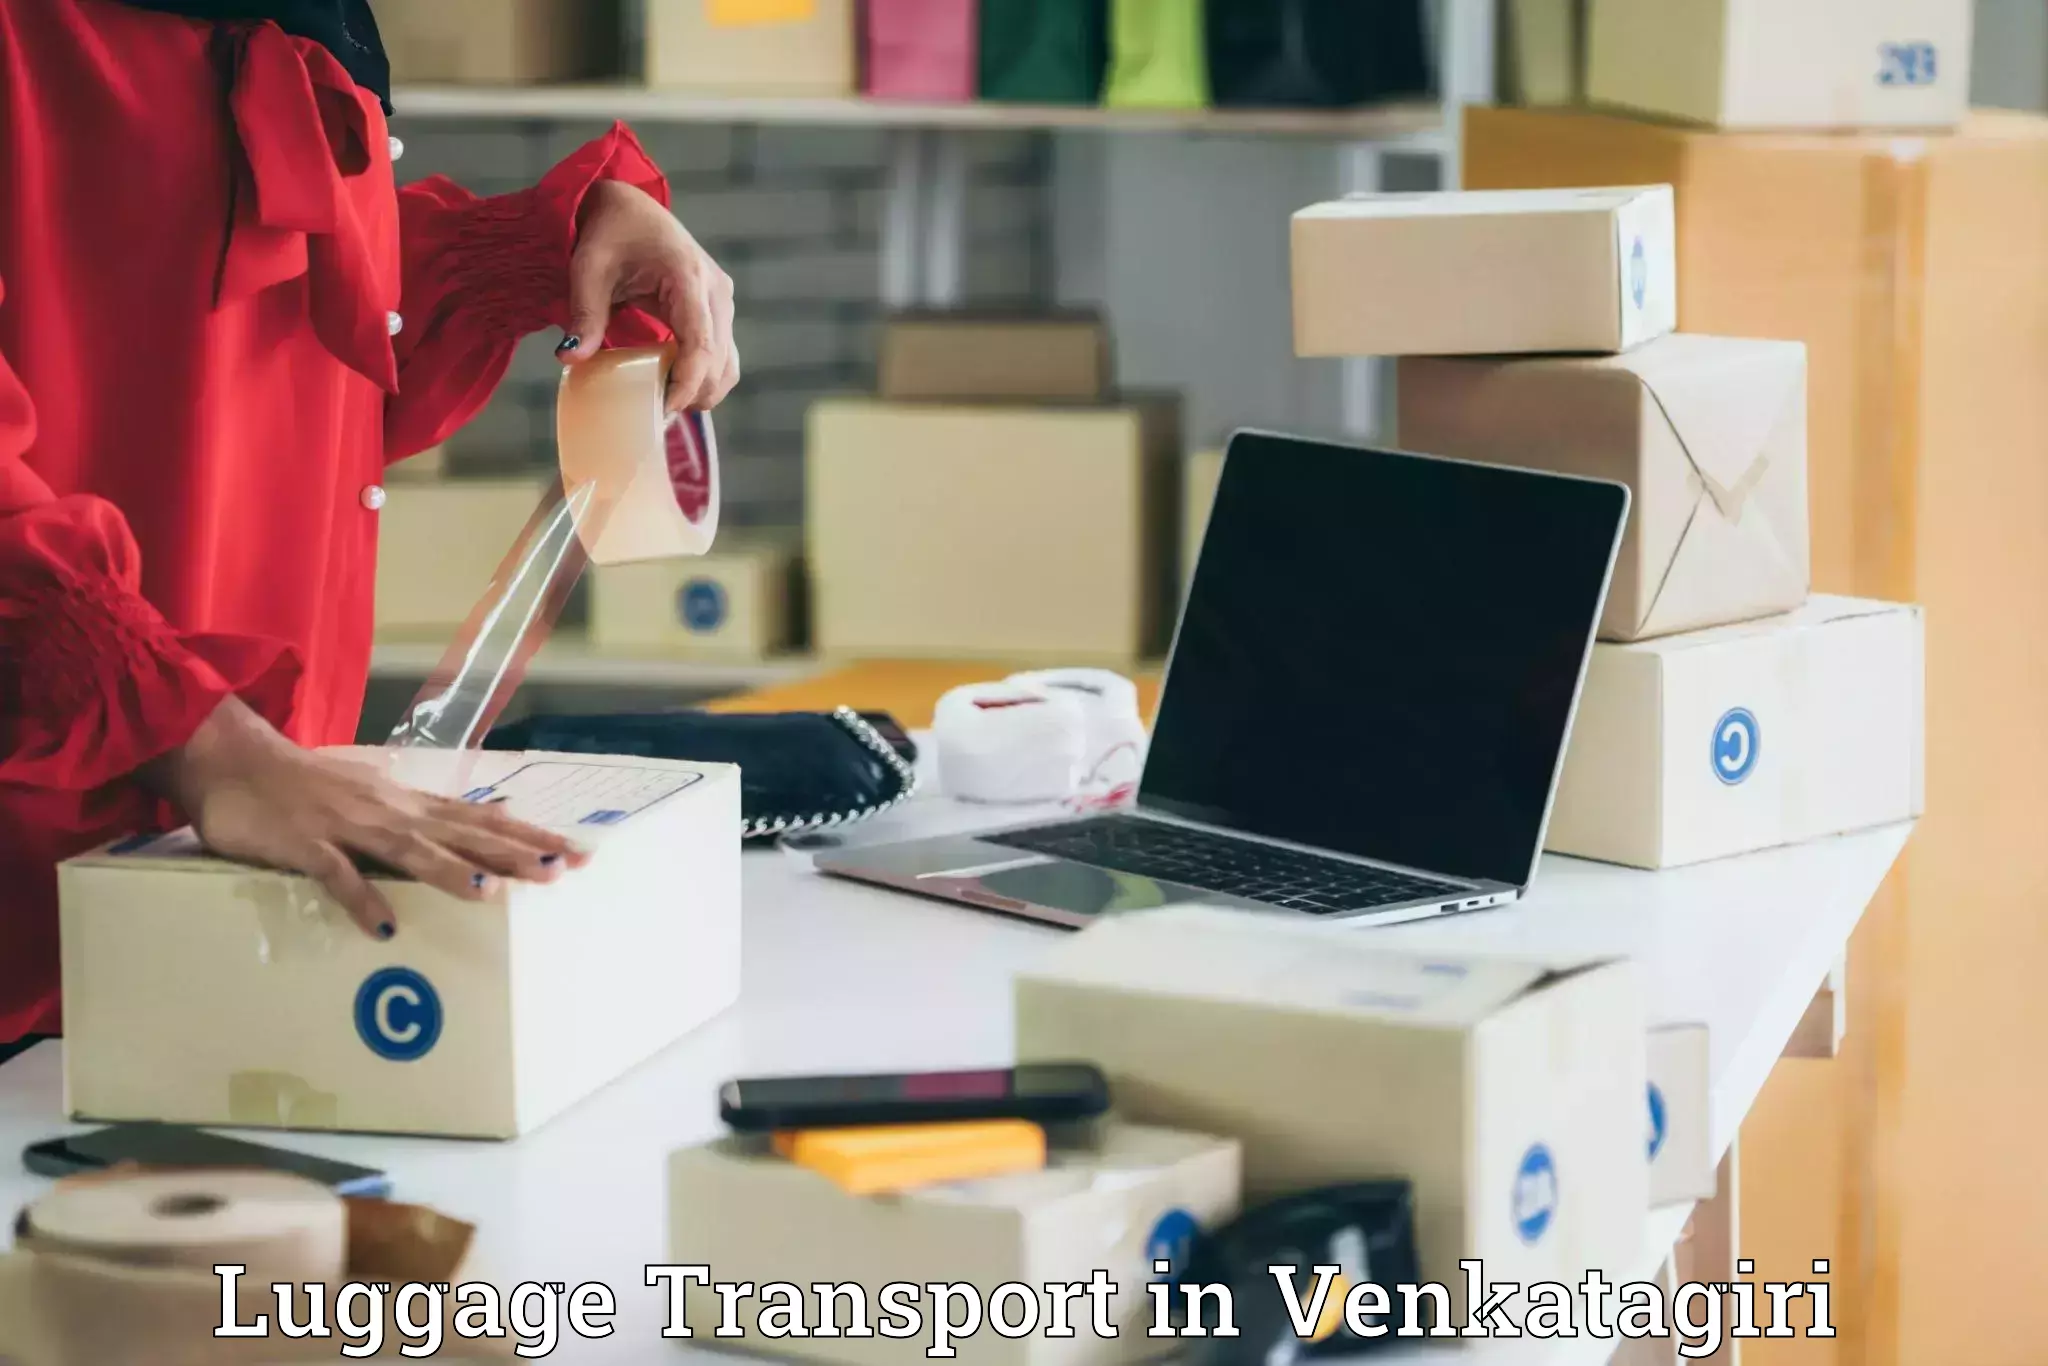 Baggage transport estimate in Venkatagiri